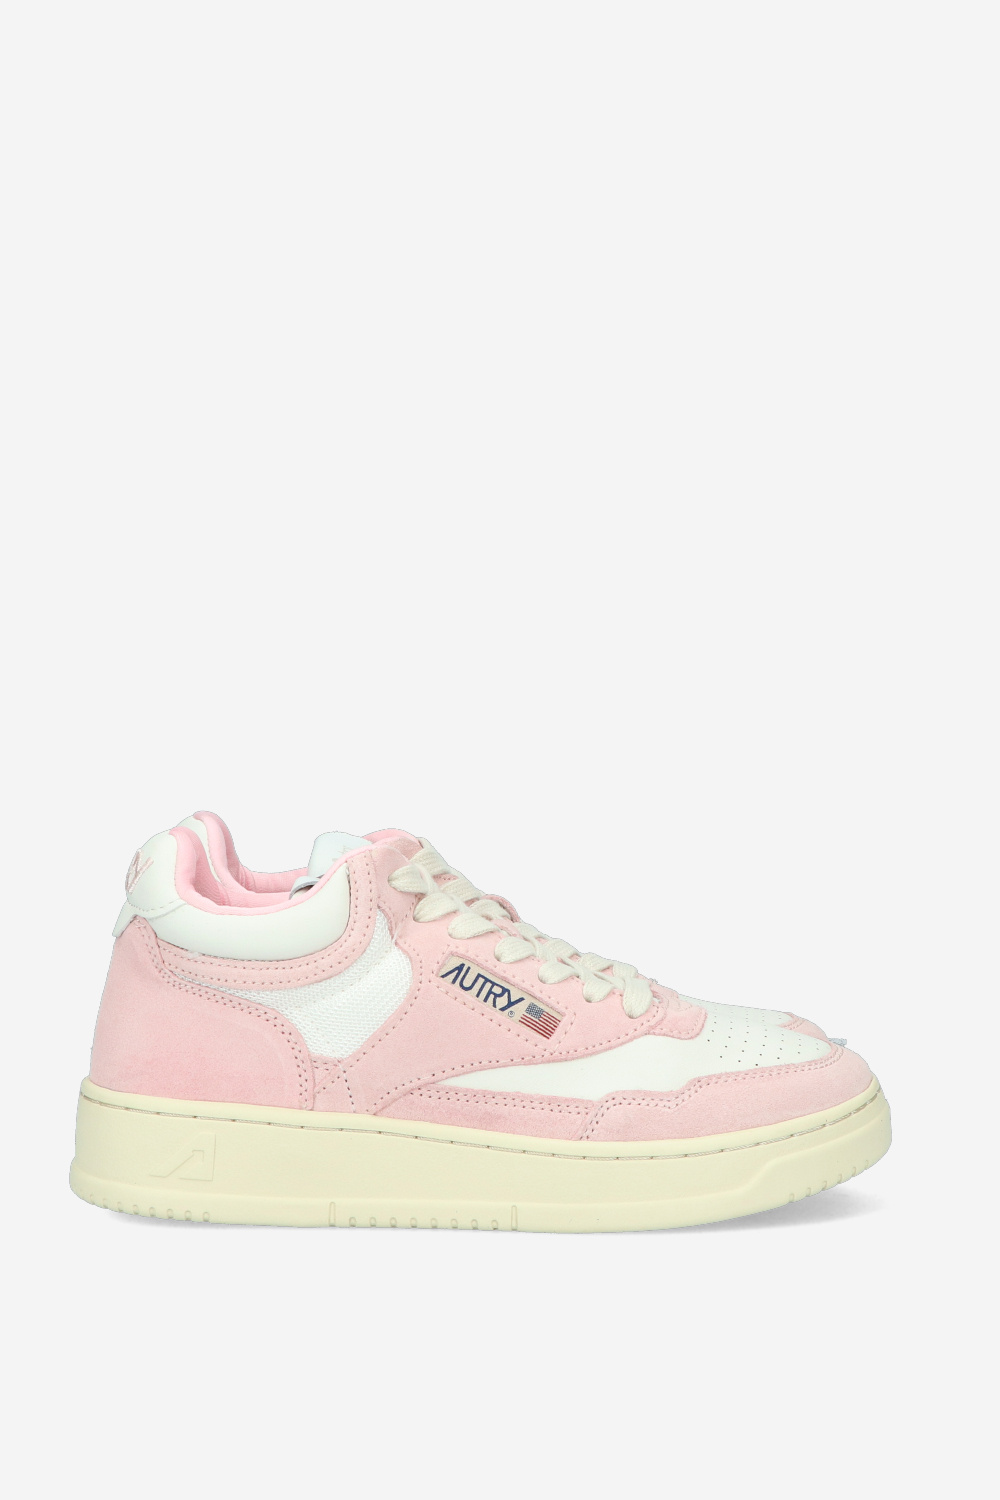 Autry Sneaker Roze